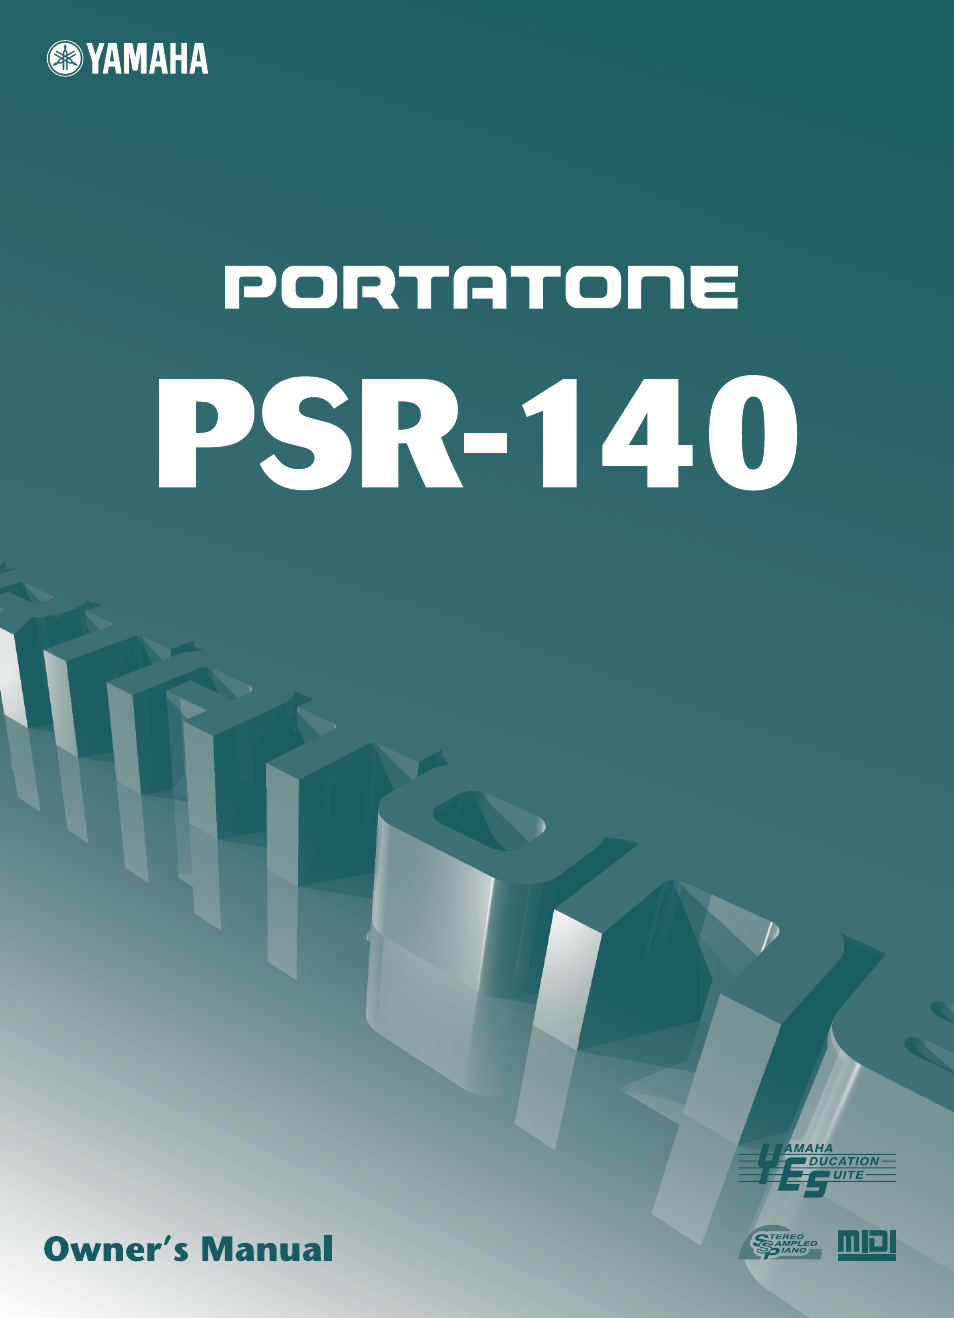 PORTATONE PSR-140